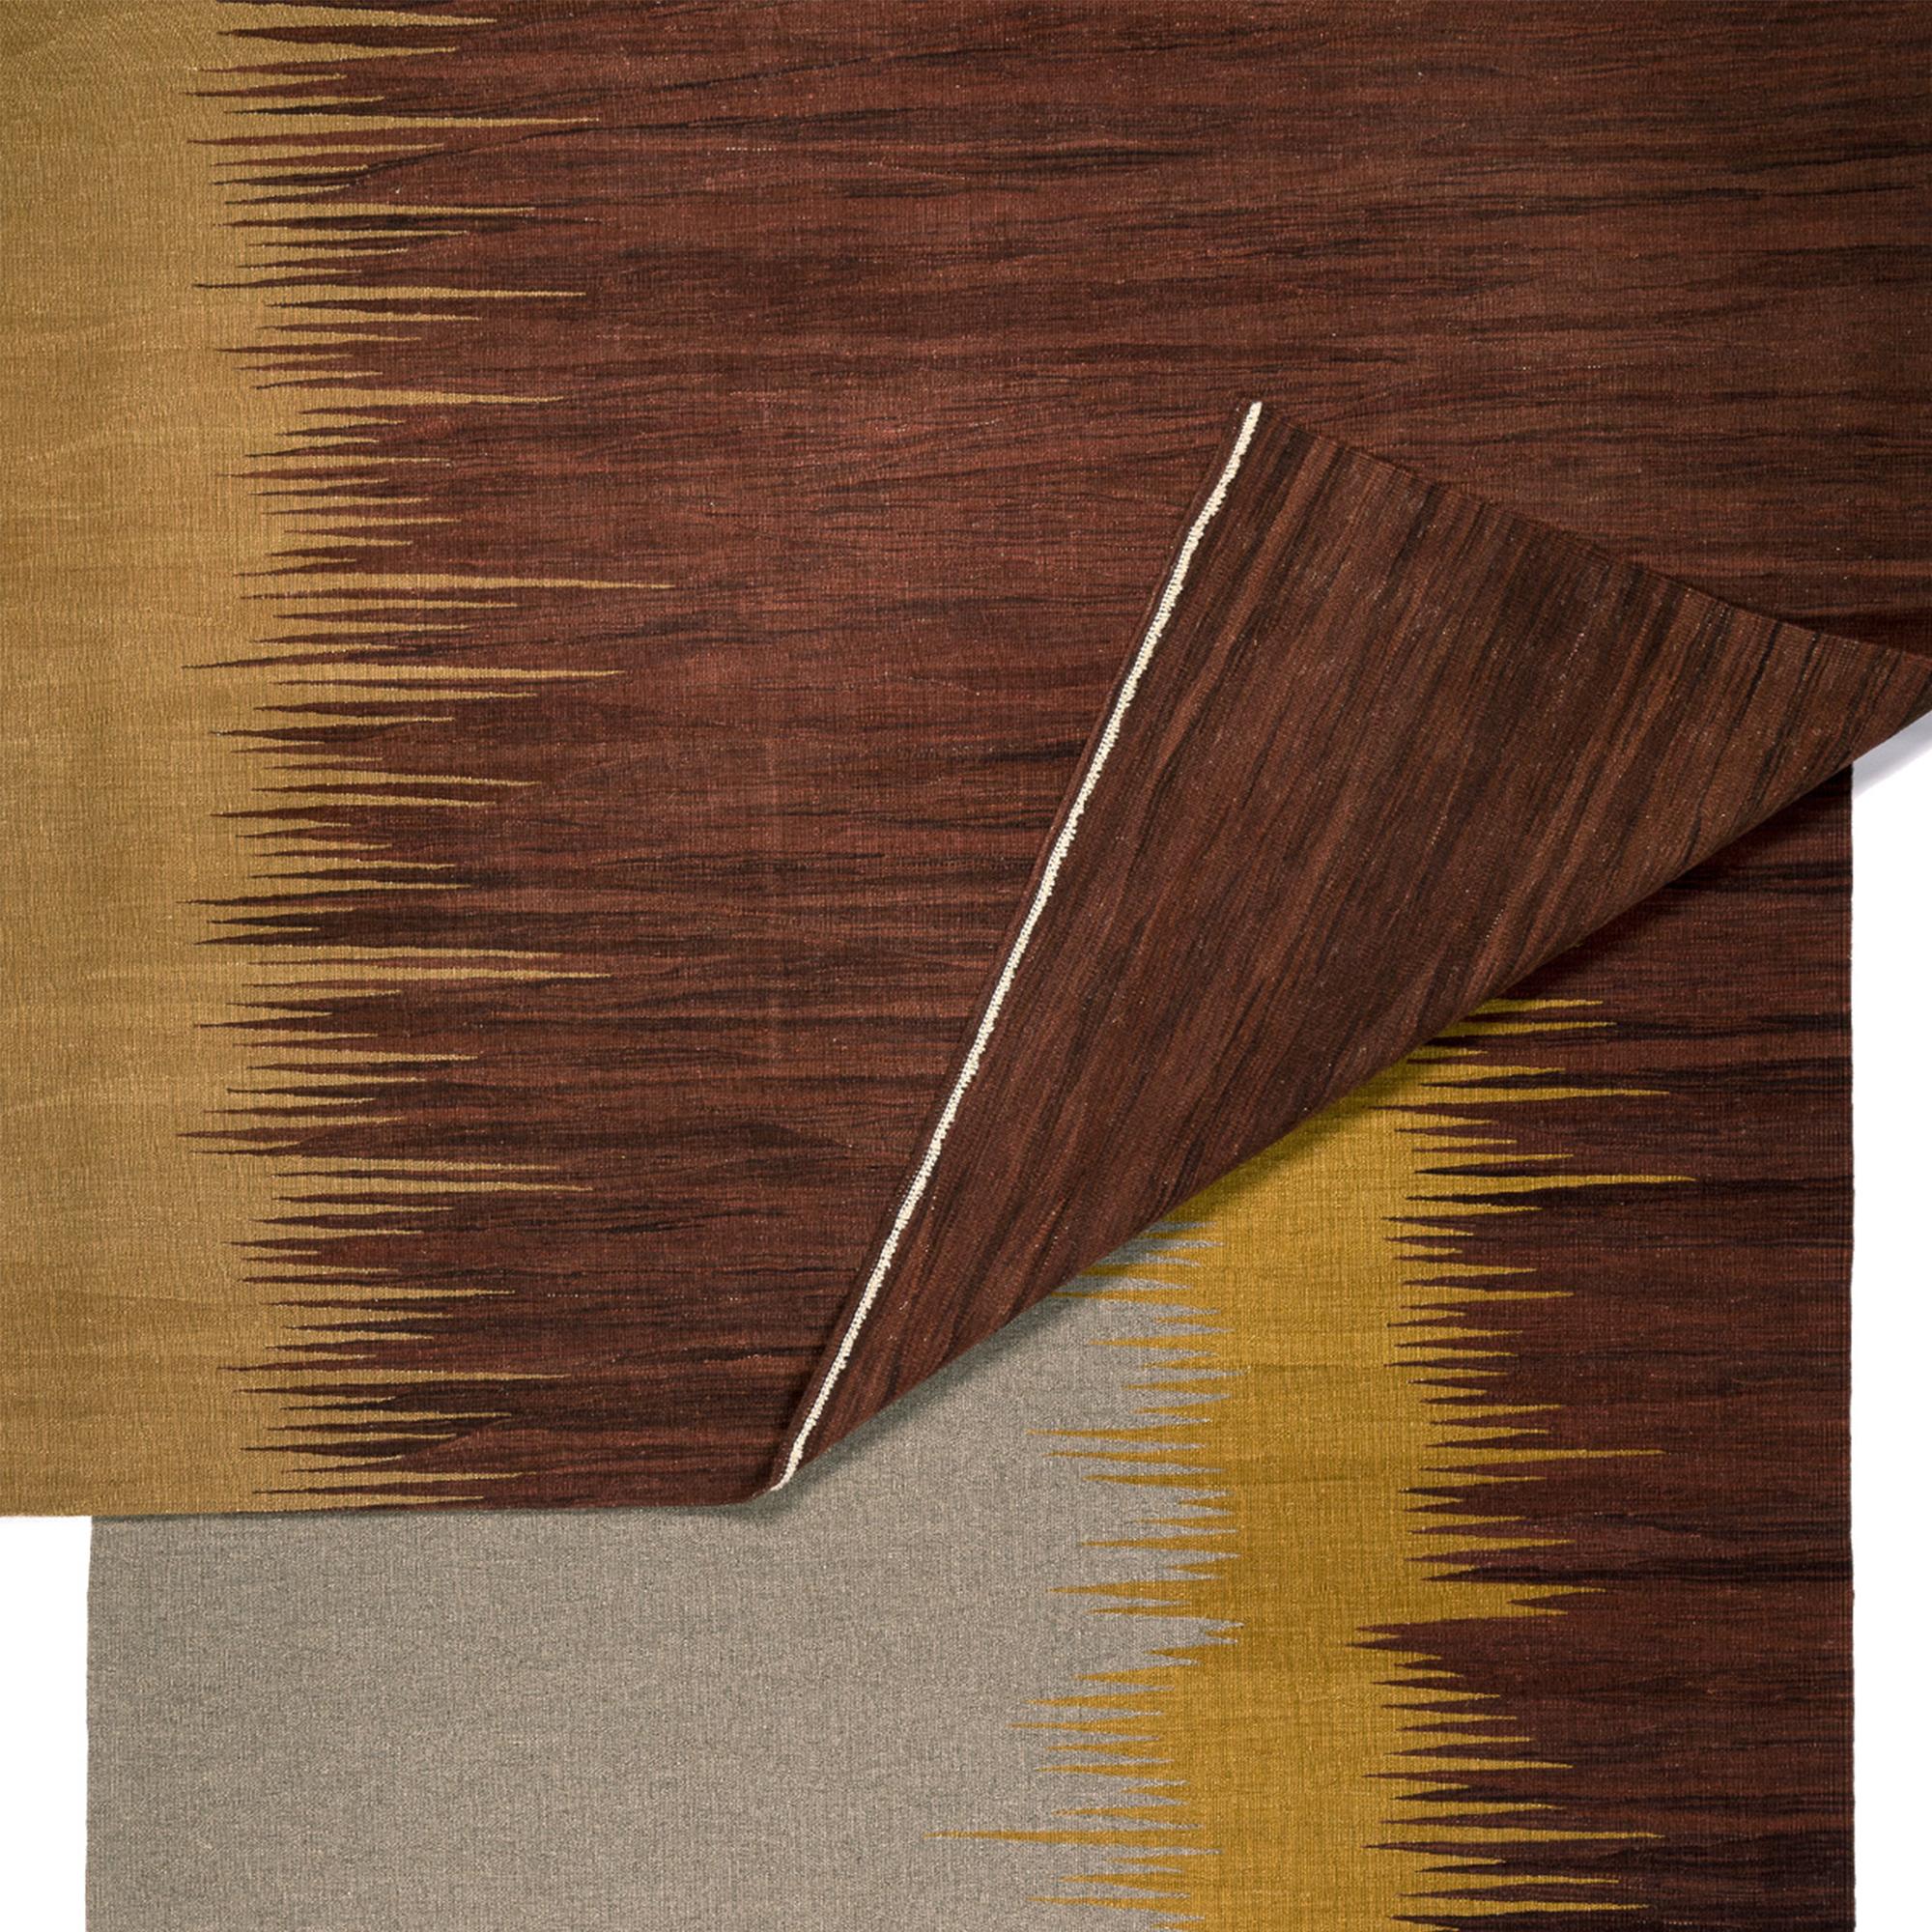 Le tapis Rug & Kilim No 1 fait partie d'une série de kilims qui s'inspirent de la poésie des reflets de la lumière à la surface de la mer. Les motifs abstraits, qui rappellent les transitions de couleurs alternées créées par la lumière réfléchie,